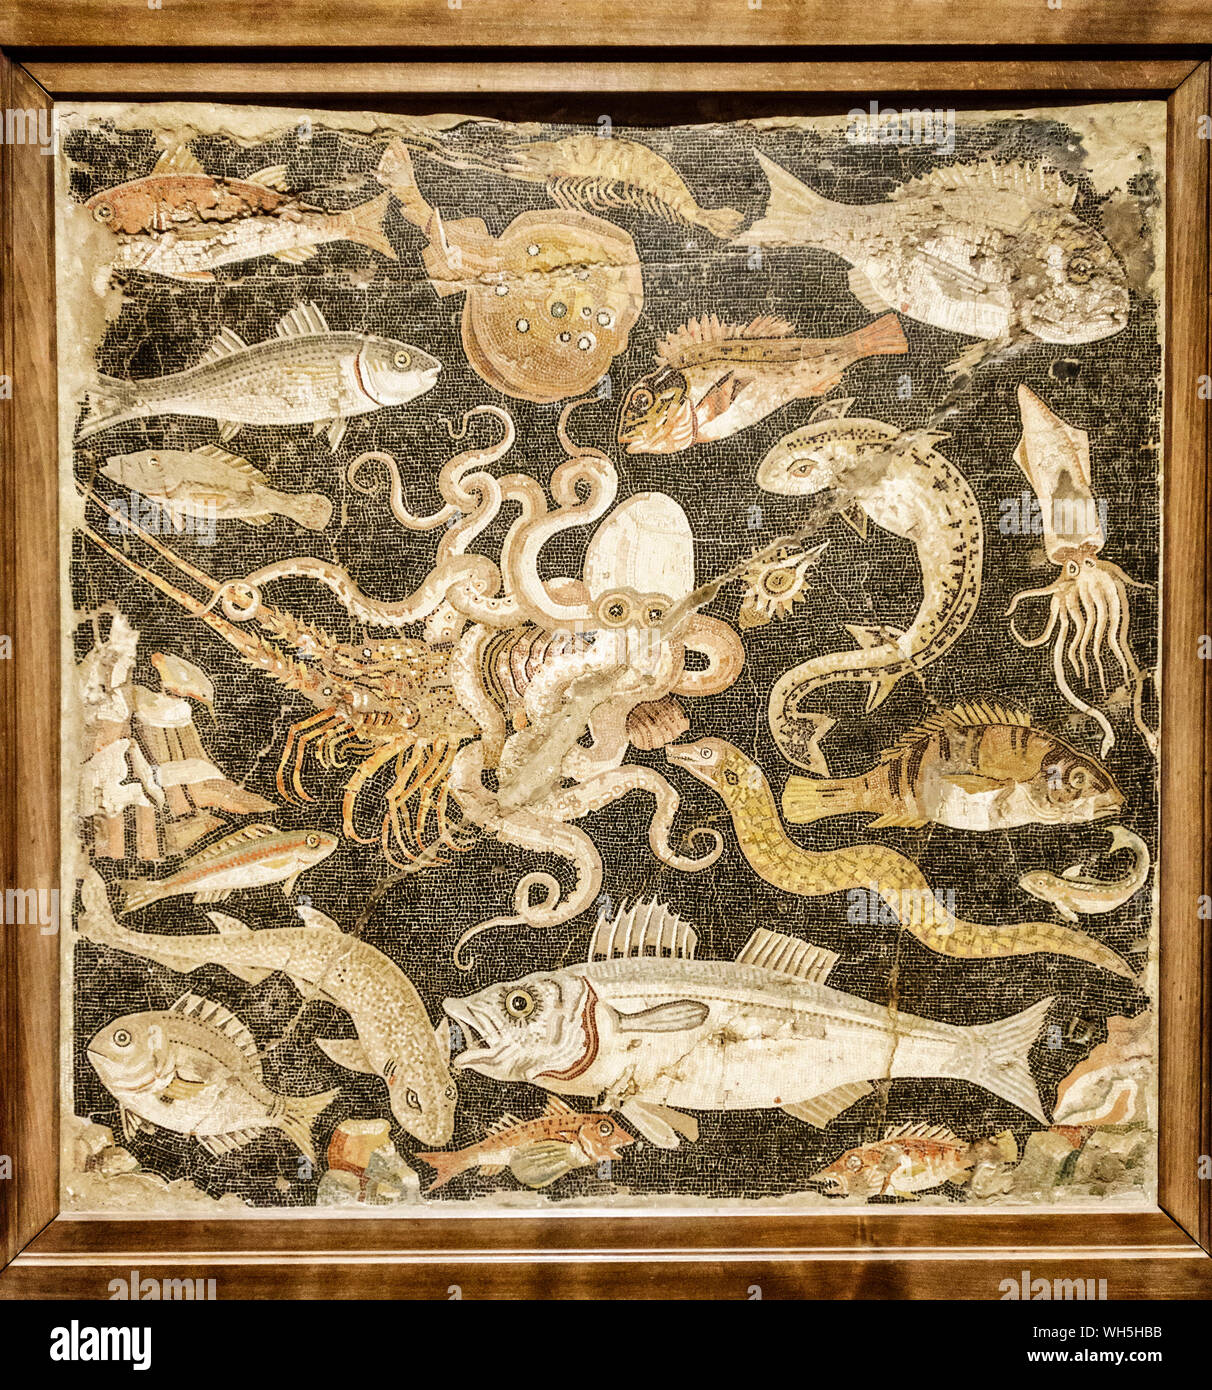 Pompei, Italia. Mosaico di vita mediterranea trovato nella Casa del Fauno, ora nel Museo Archeologico Nazionale di Napoli (circa 50BC) Foto Stock